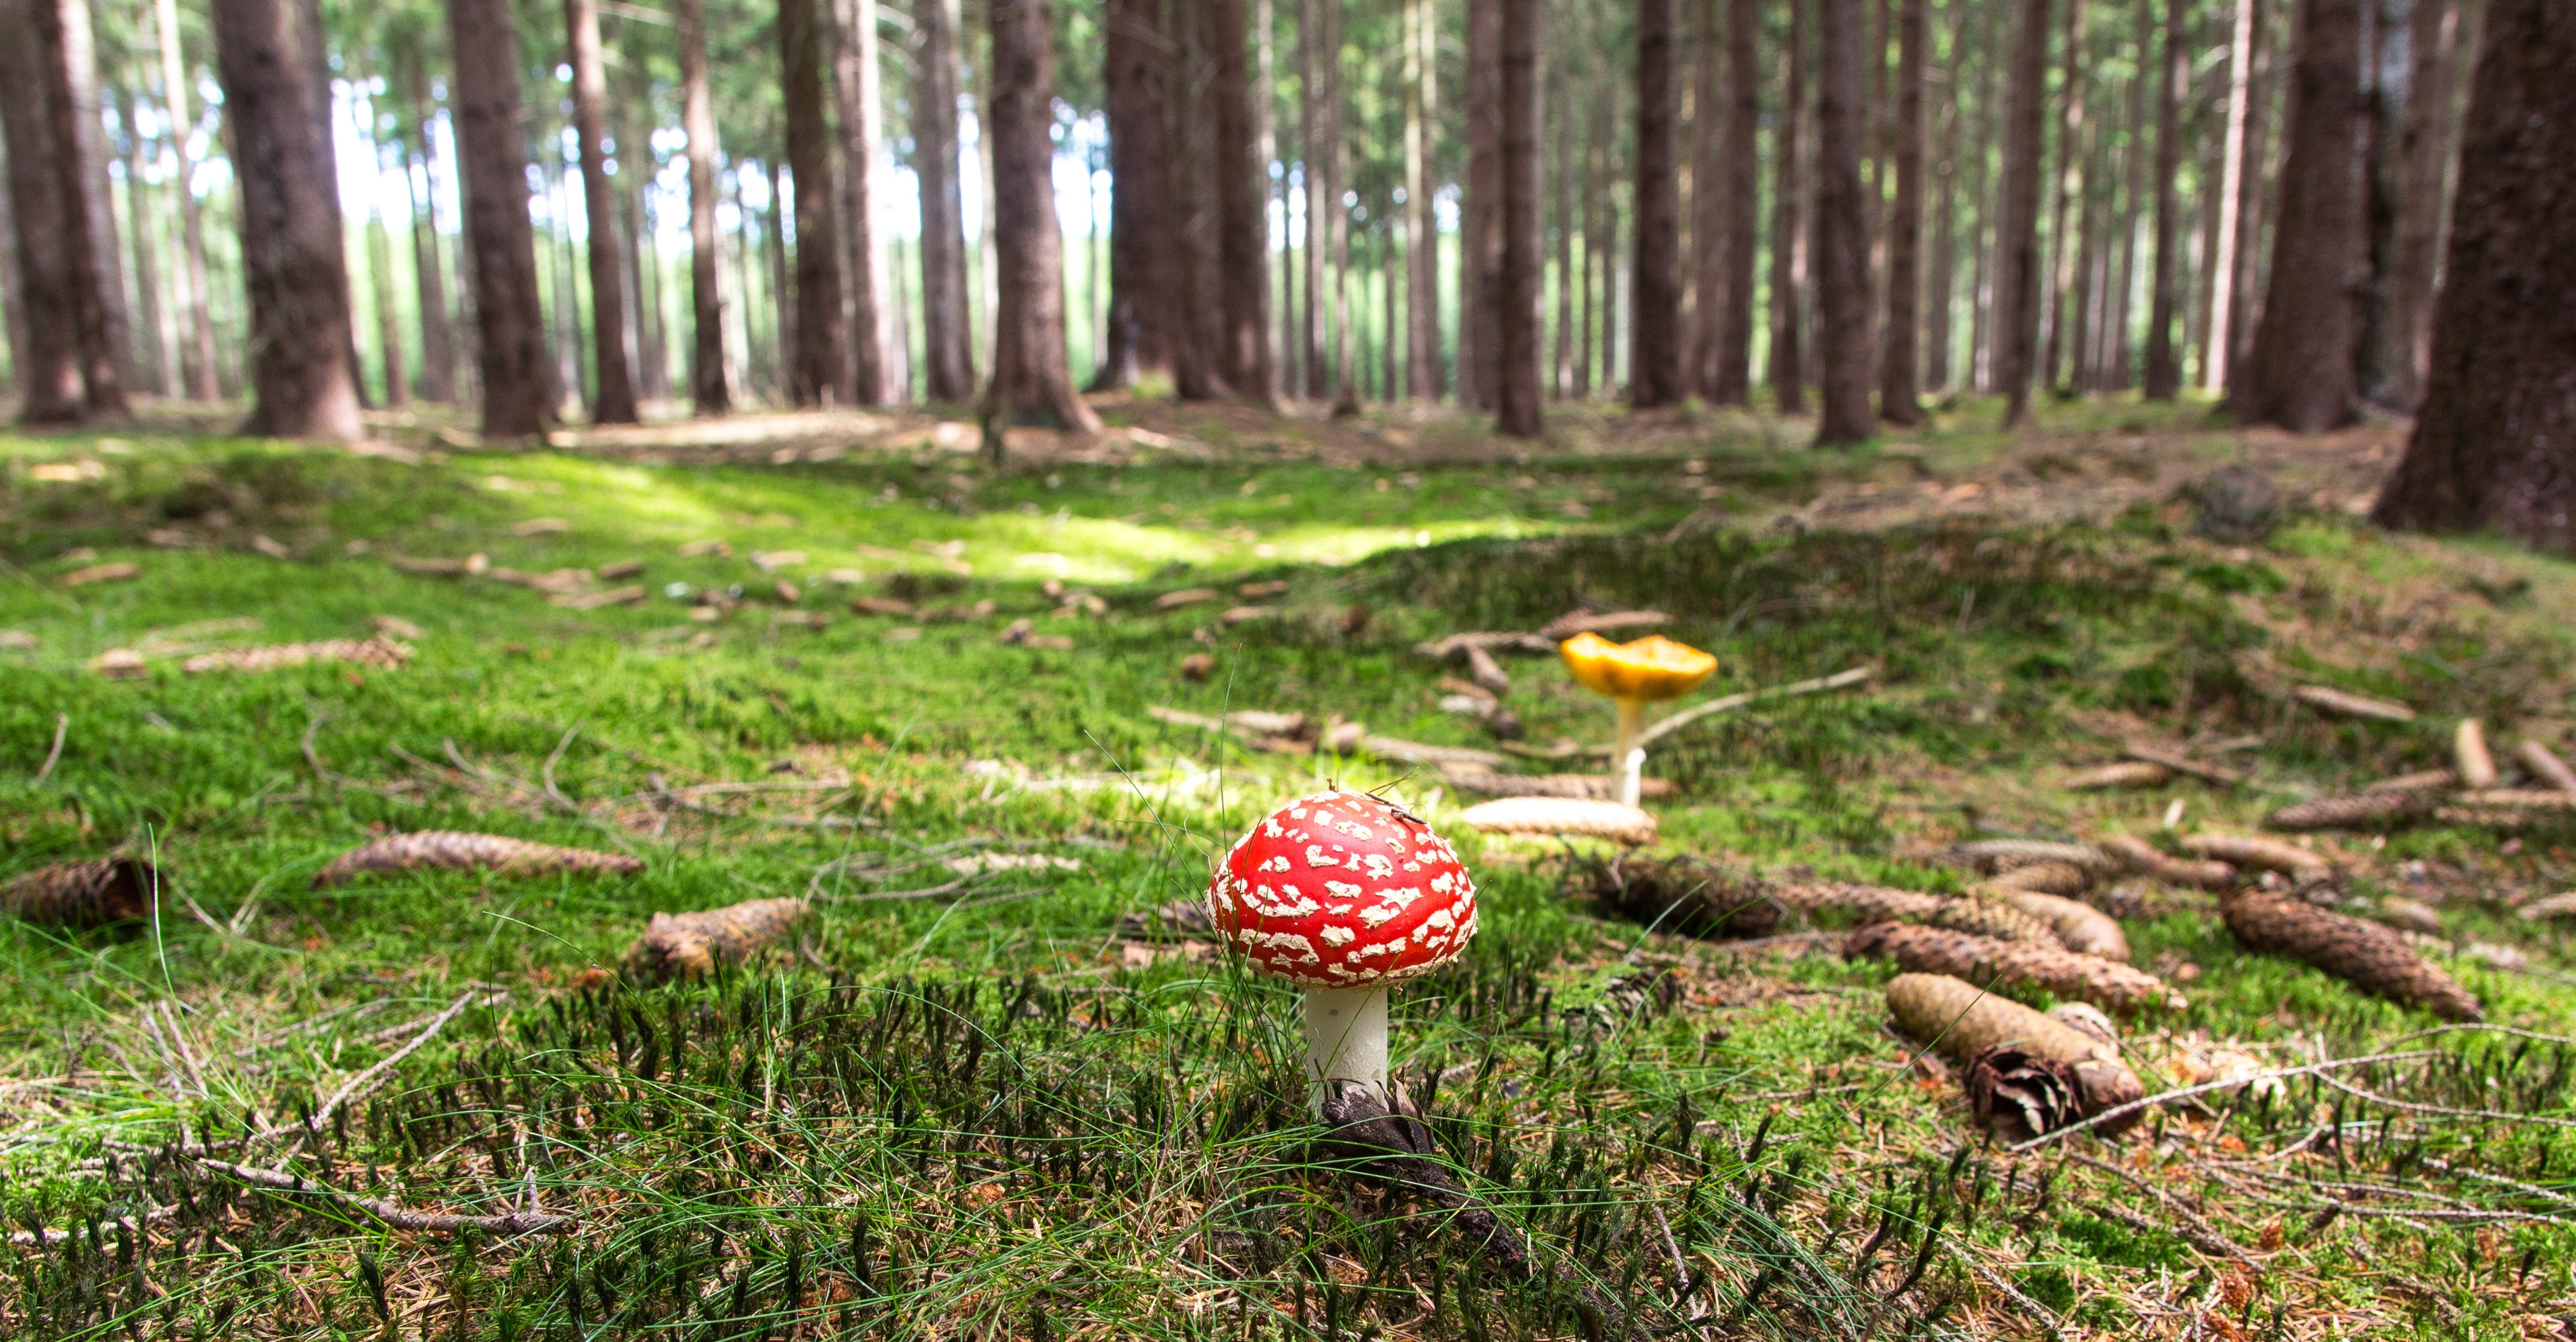 Red and white mushroom beside yellow mushroom near green trees during daytime photo